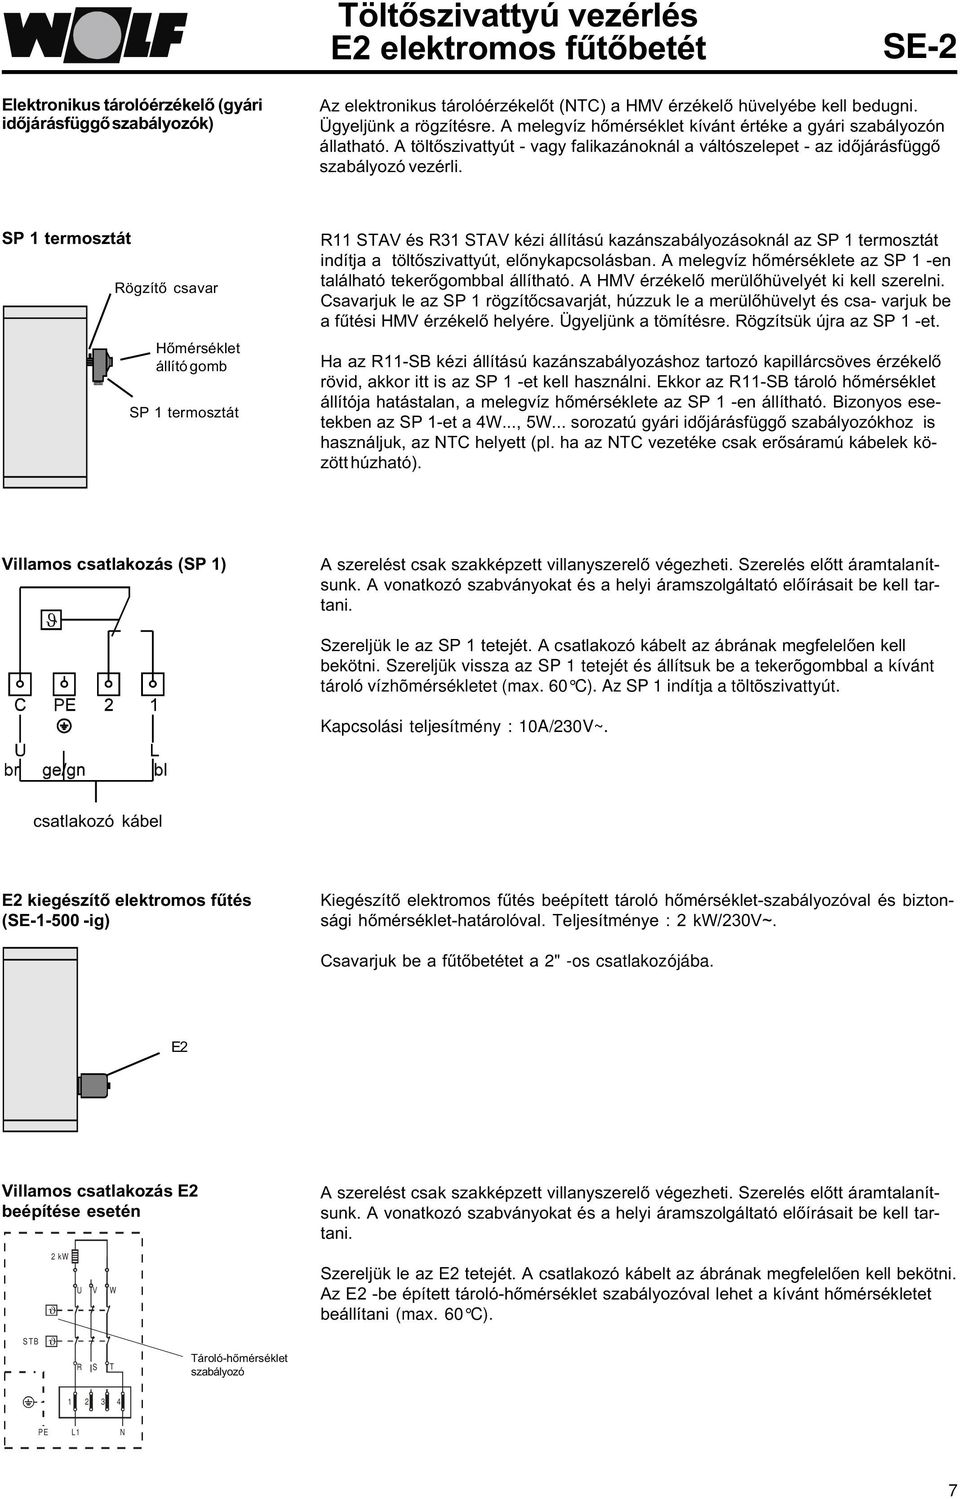 SP 1 termosztát Rögzítõ csavar Hõmérséklet állító gomb SP 1 termosztát R11 STAV és R31 STAV kézi állítású kazánszabályozásoknál az SP 1 termosztát indítja a töltõszivattyút, elõnykapcsolásban.